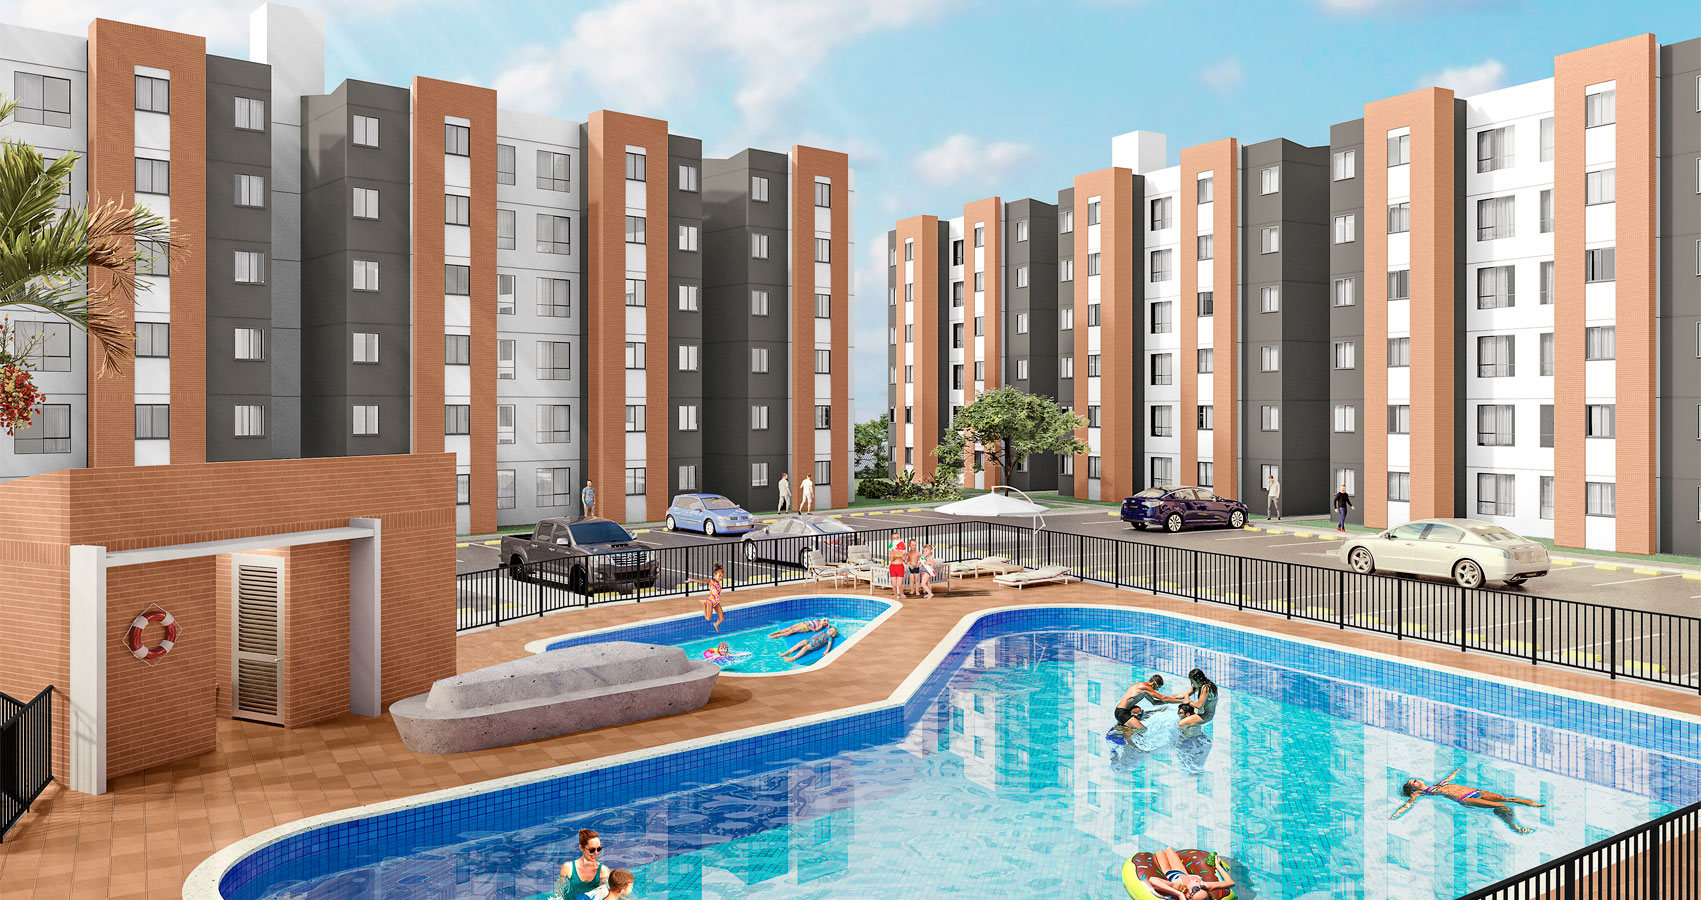  Proyecto de apartamentos en jamundi, con subsidio de vivienda, constructora bolivar